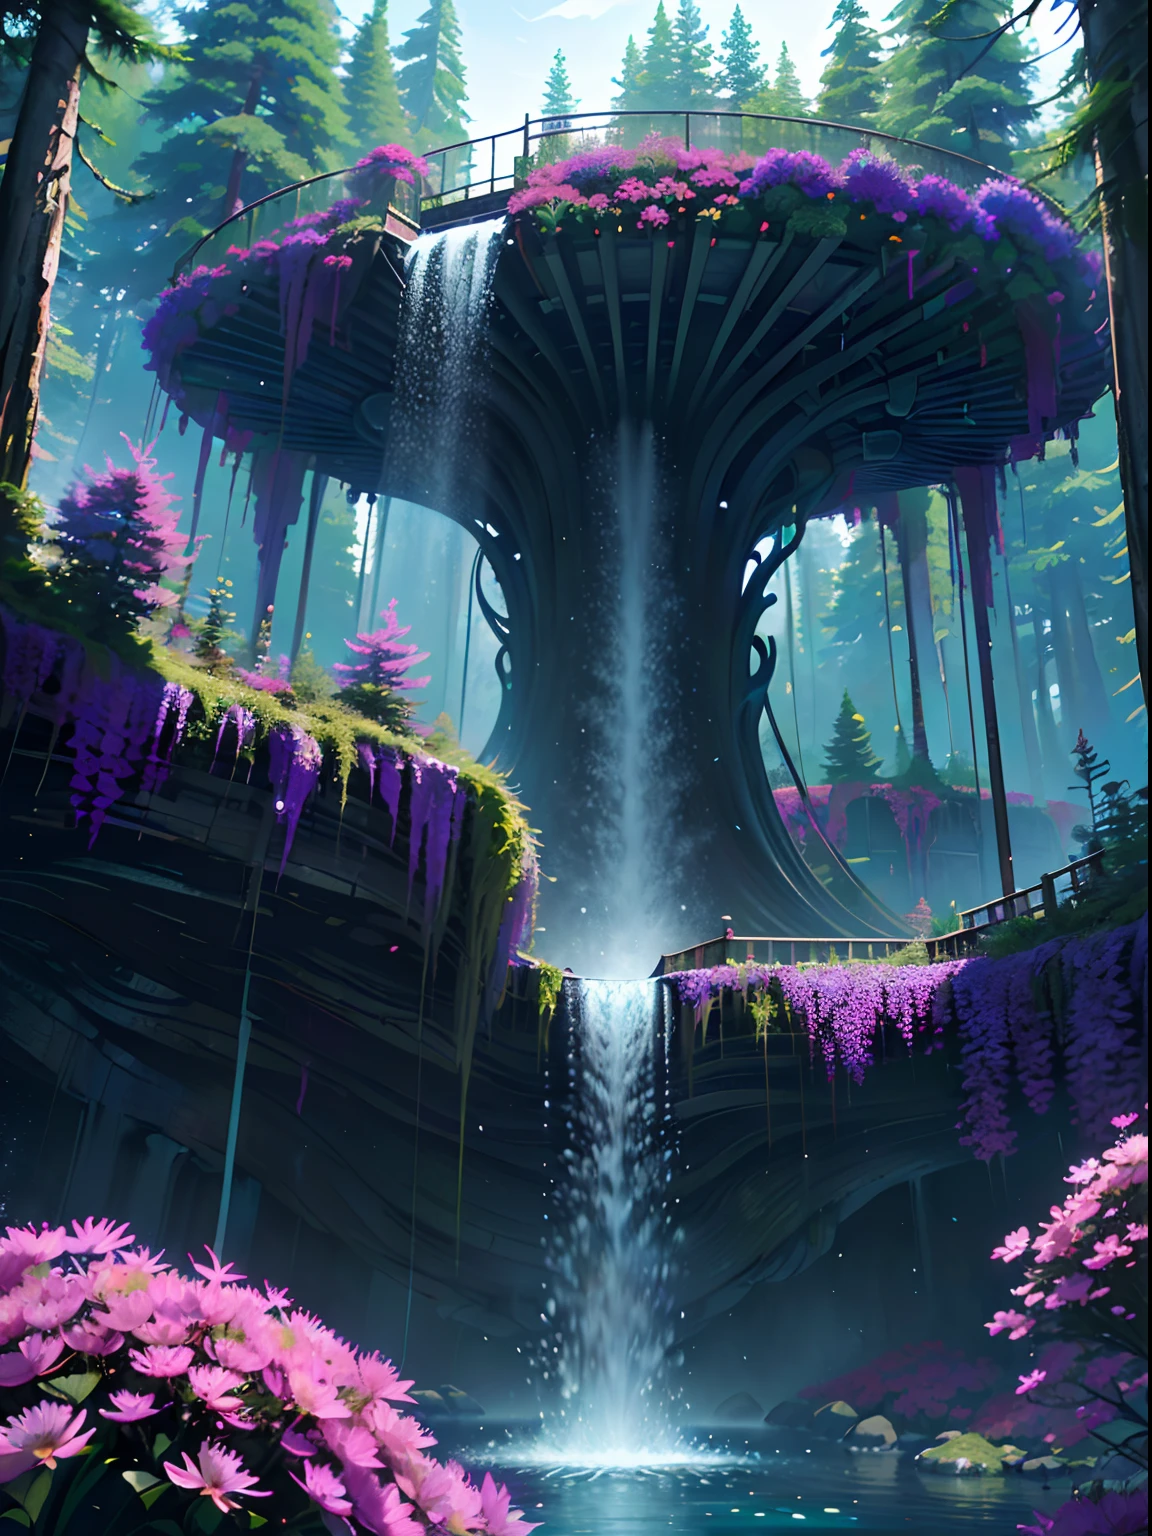 سائل ممغنط, A beautiful bioفاسق waterfall in nature, زاهى الألوان, زهور, اشجار الصنوبر, جسر معلق, فاسق, صافرة.